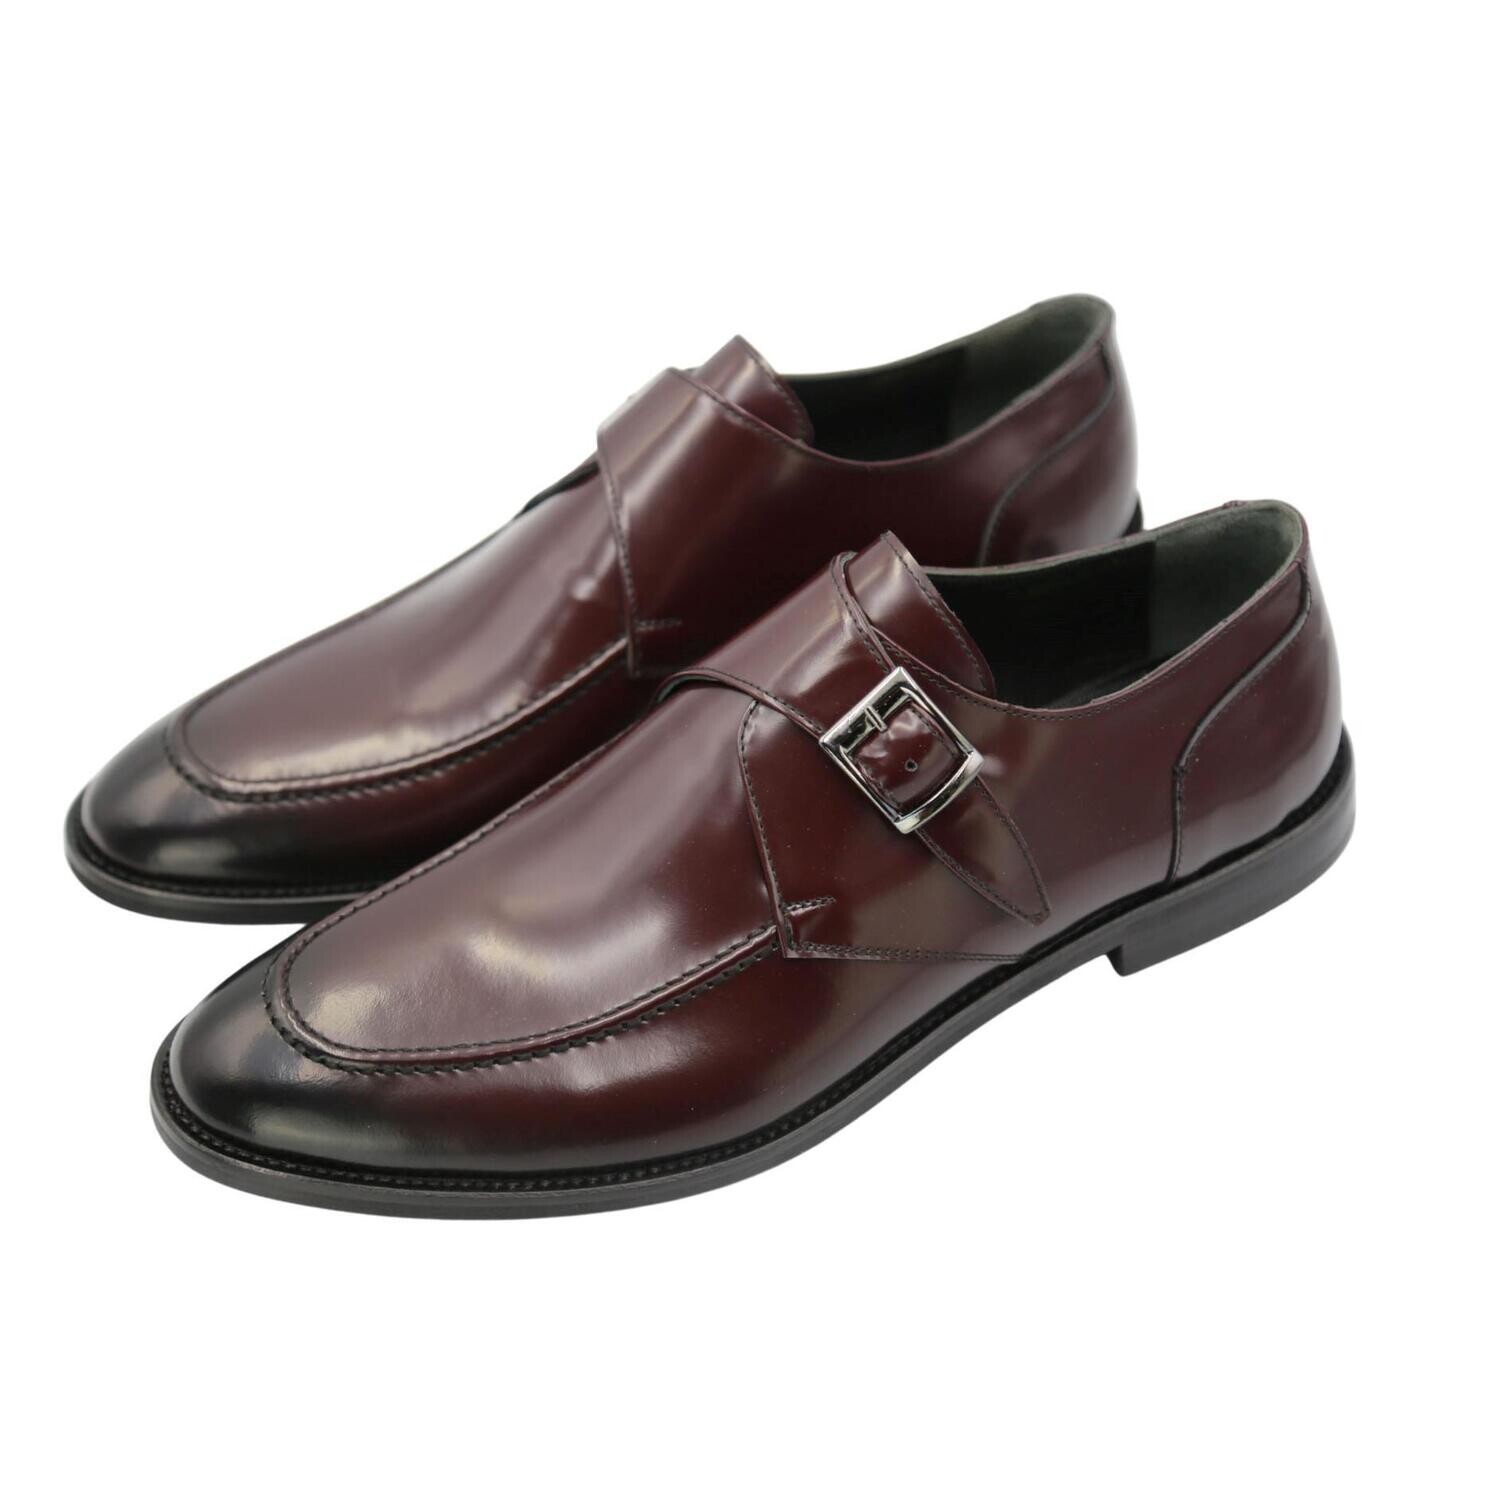 Men's Luxury Formal Leather Shoe